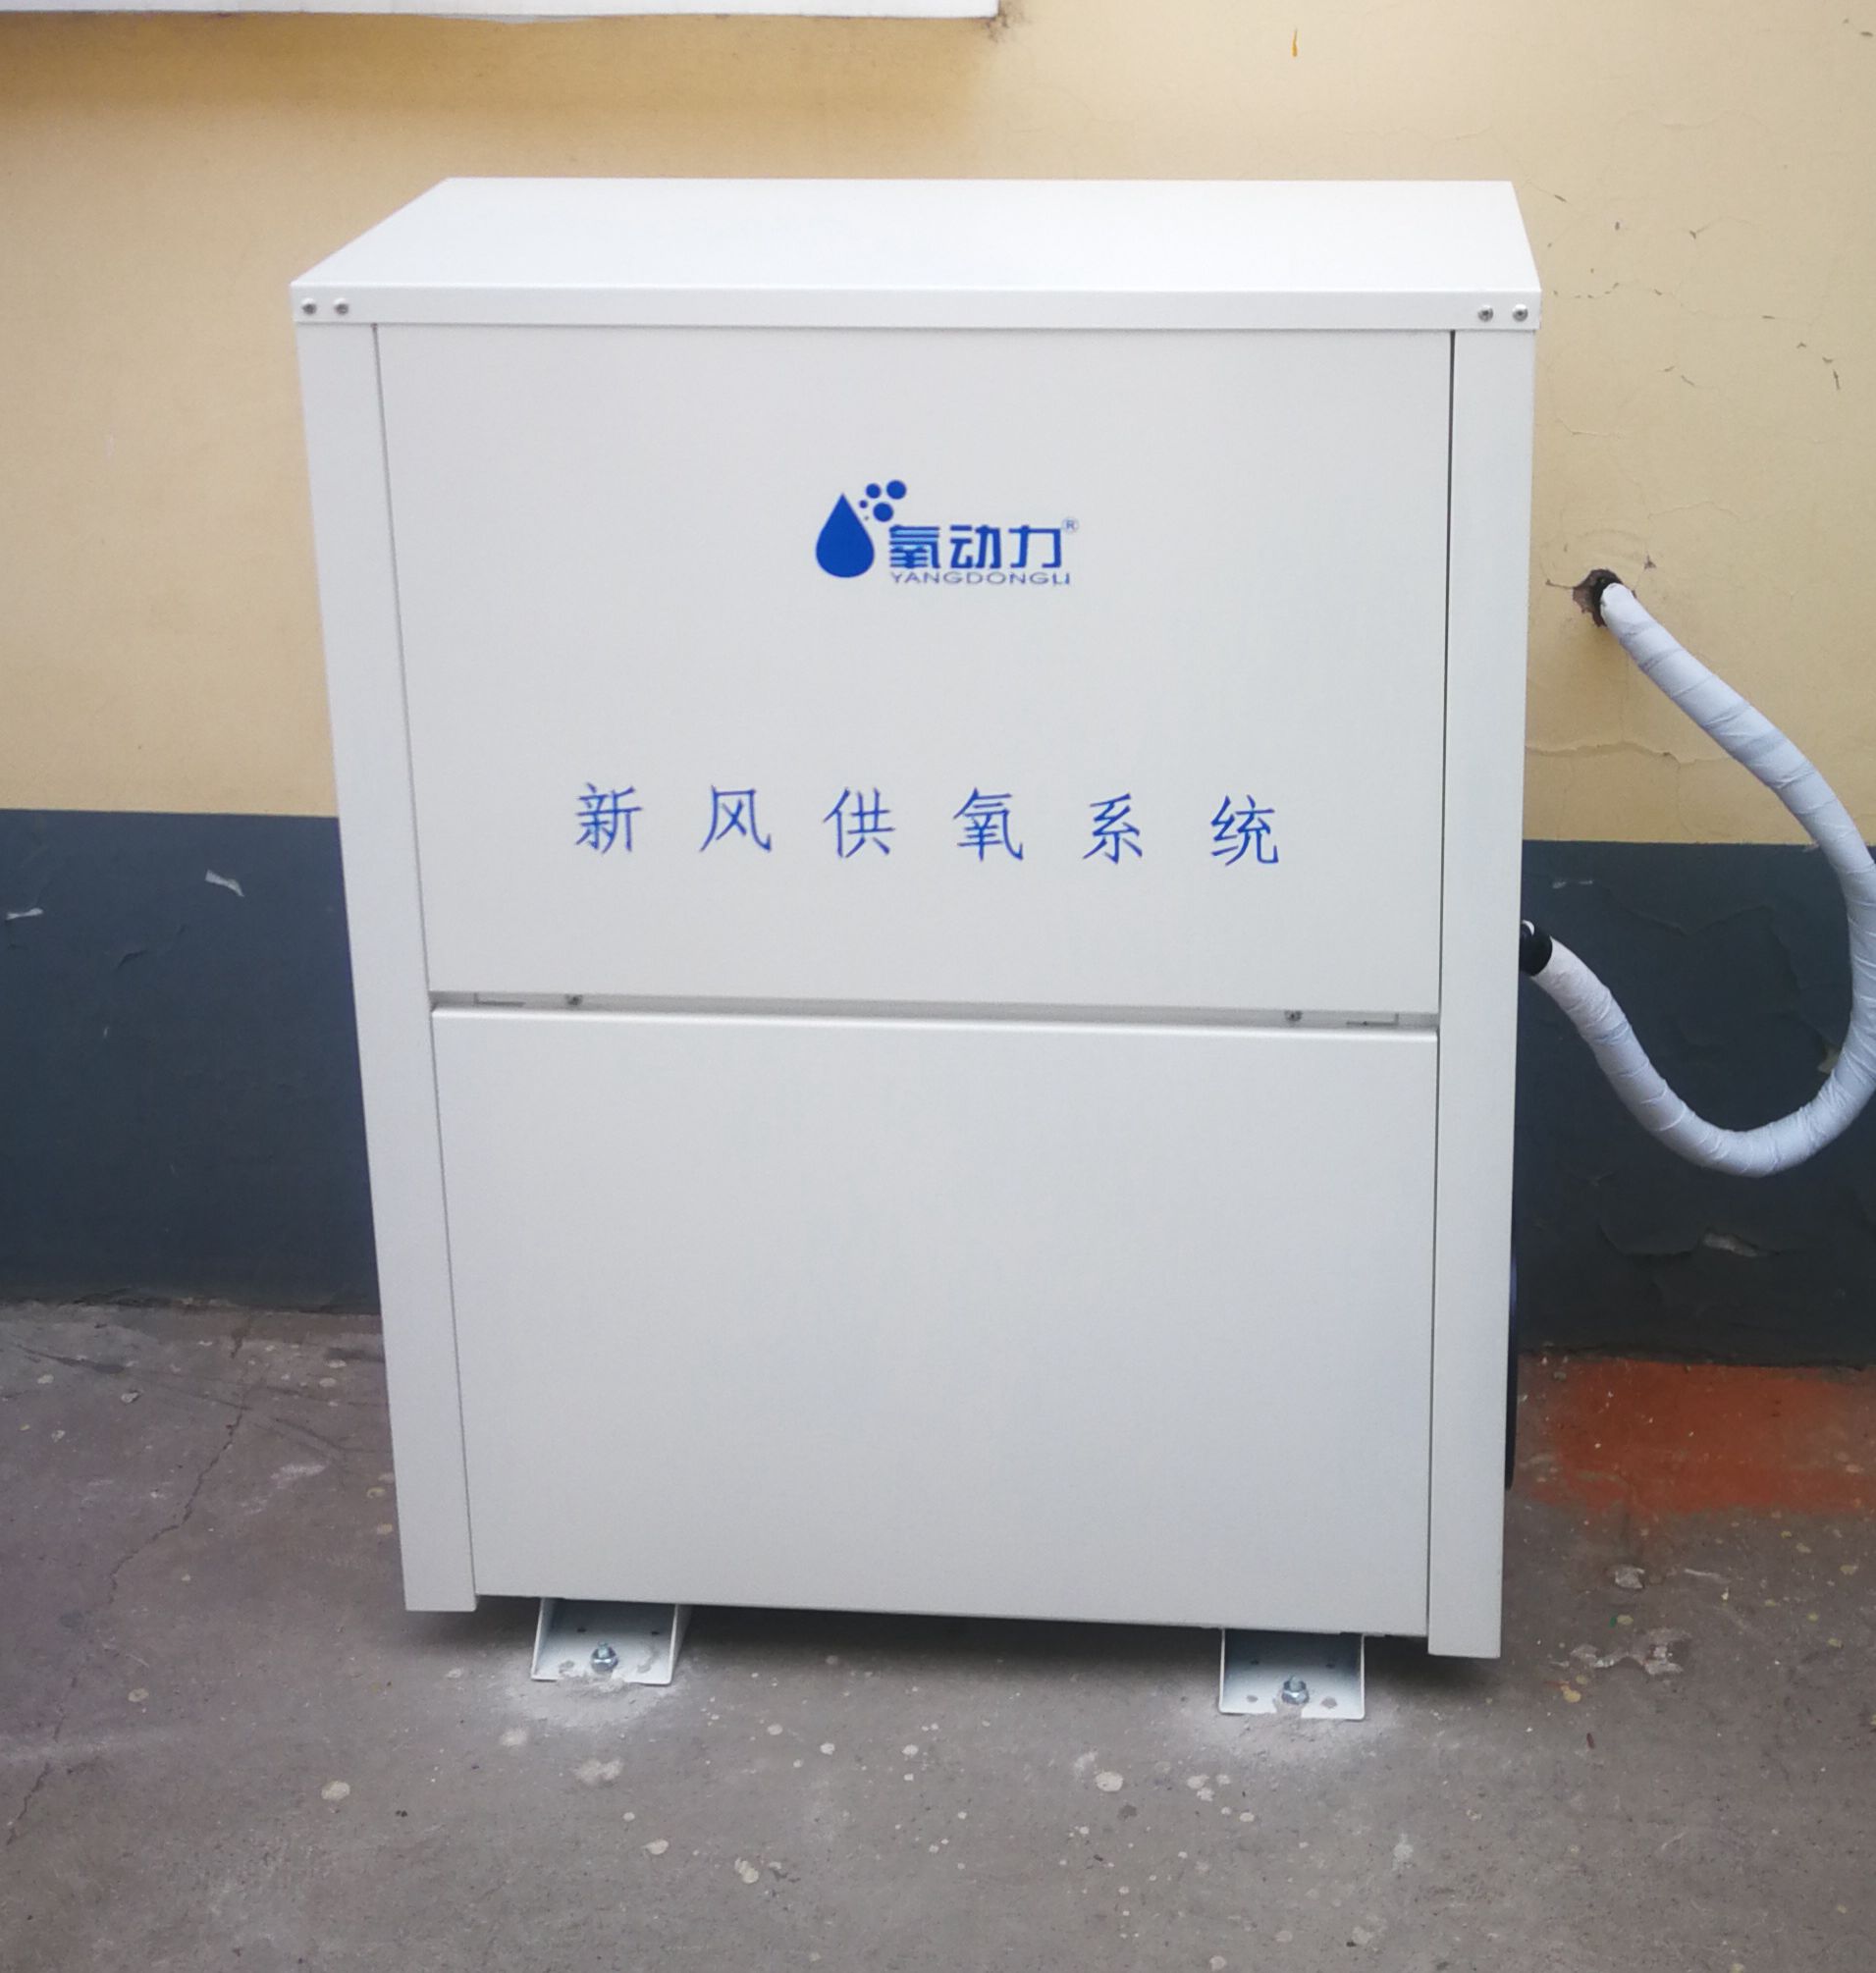 供应大型制氧机,西藏高原地区专业供氧,高原补氧机器